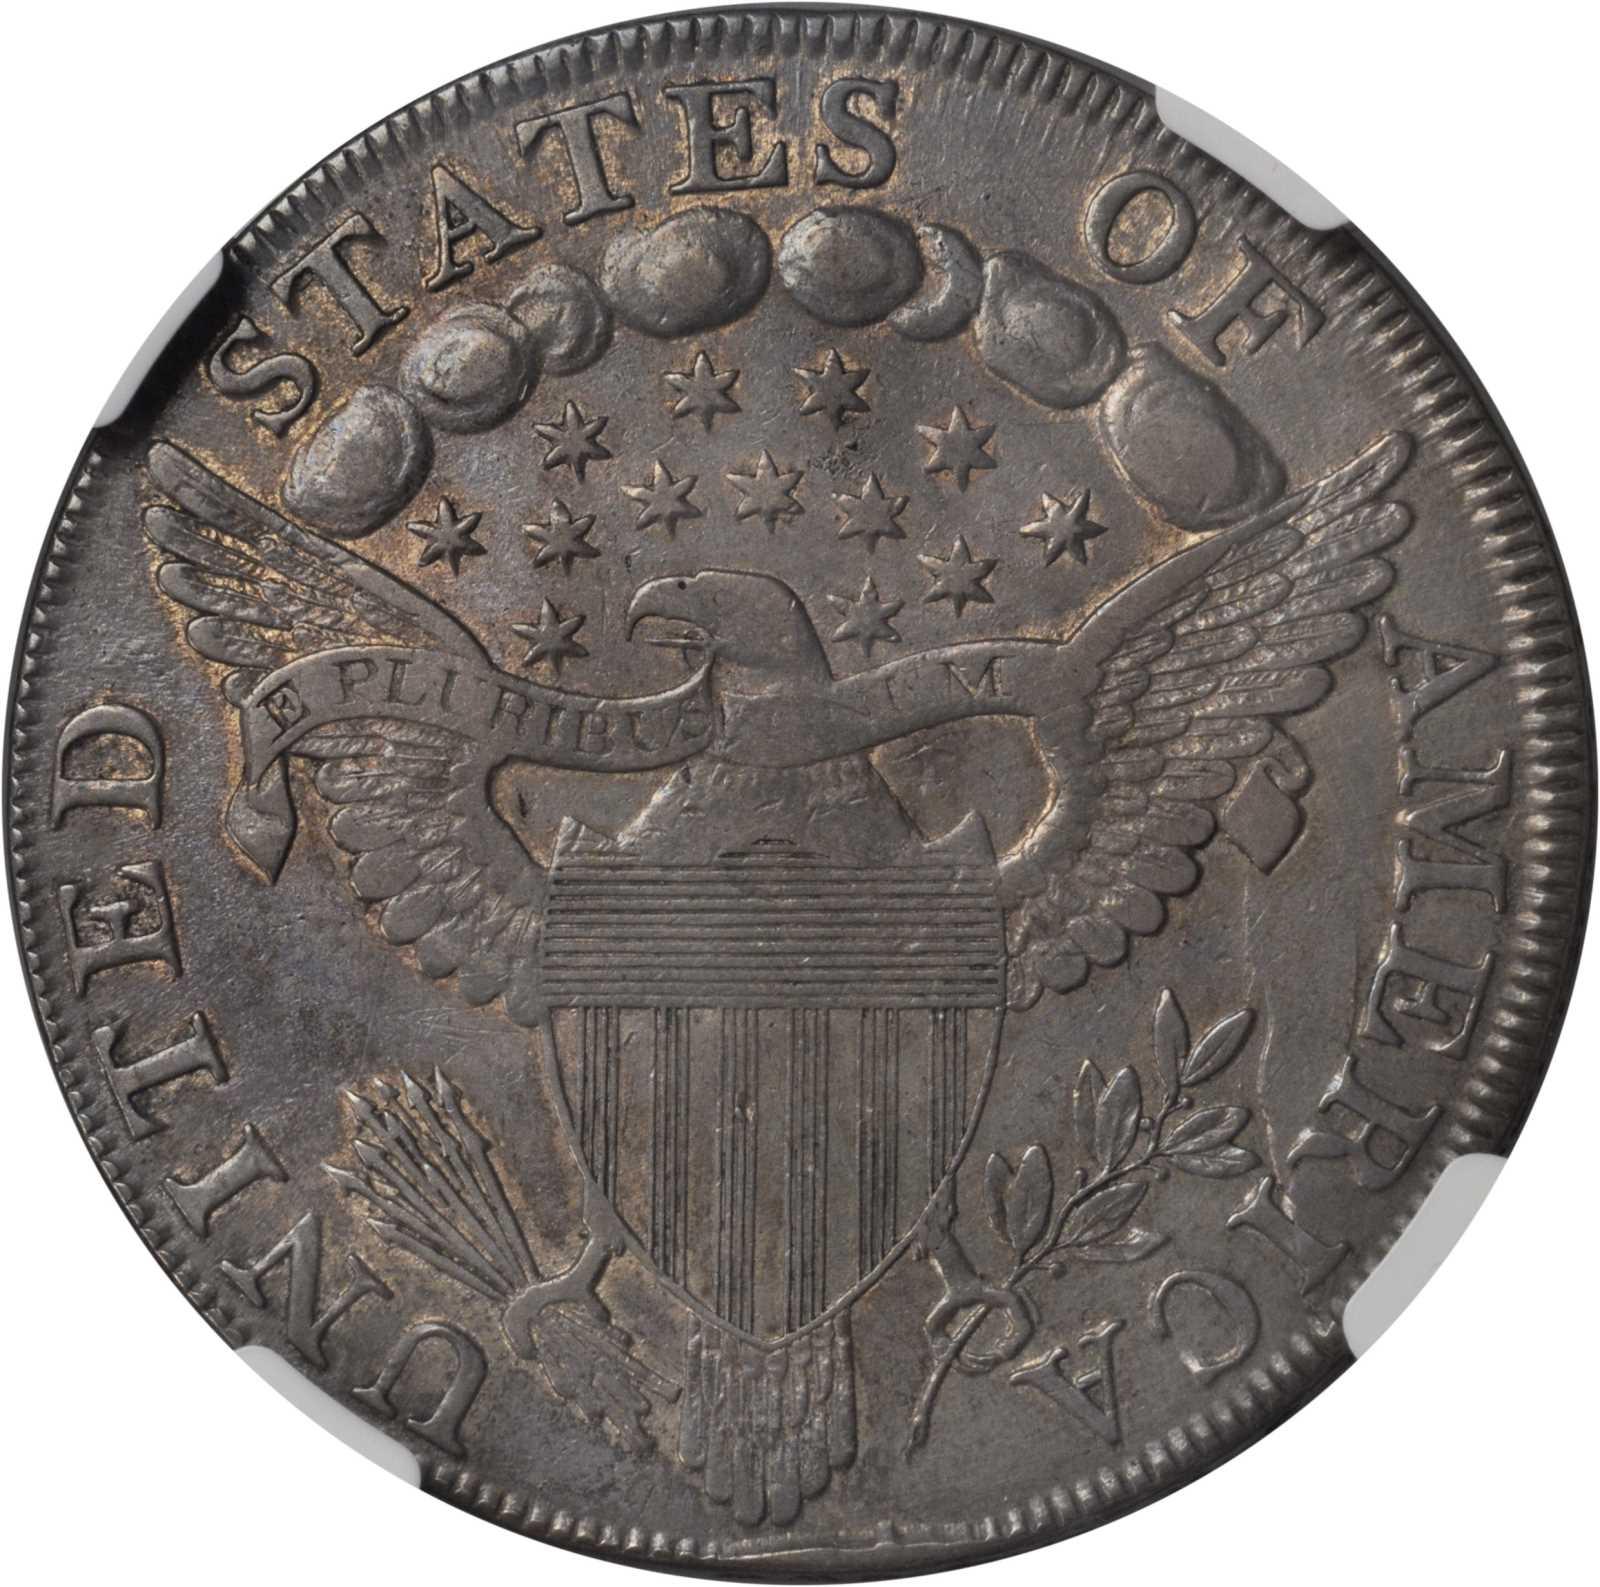 1798 dollar coin value